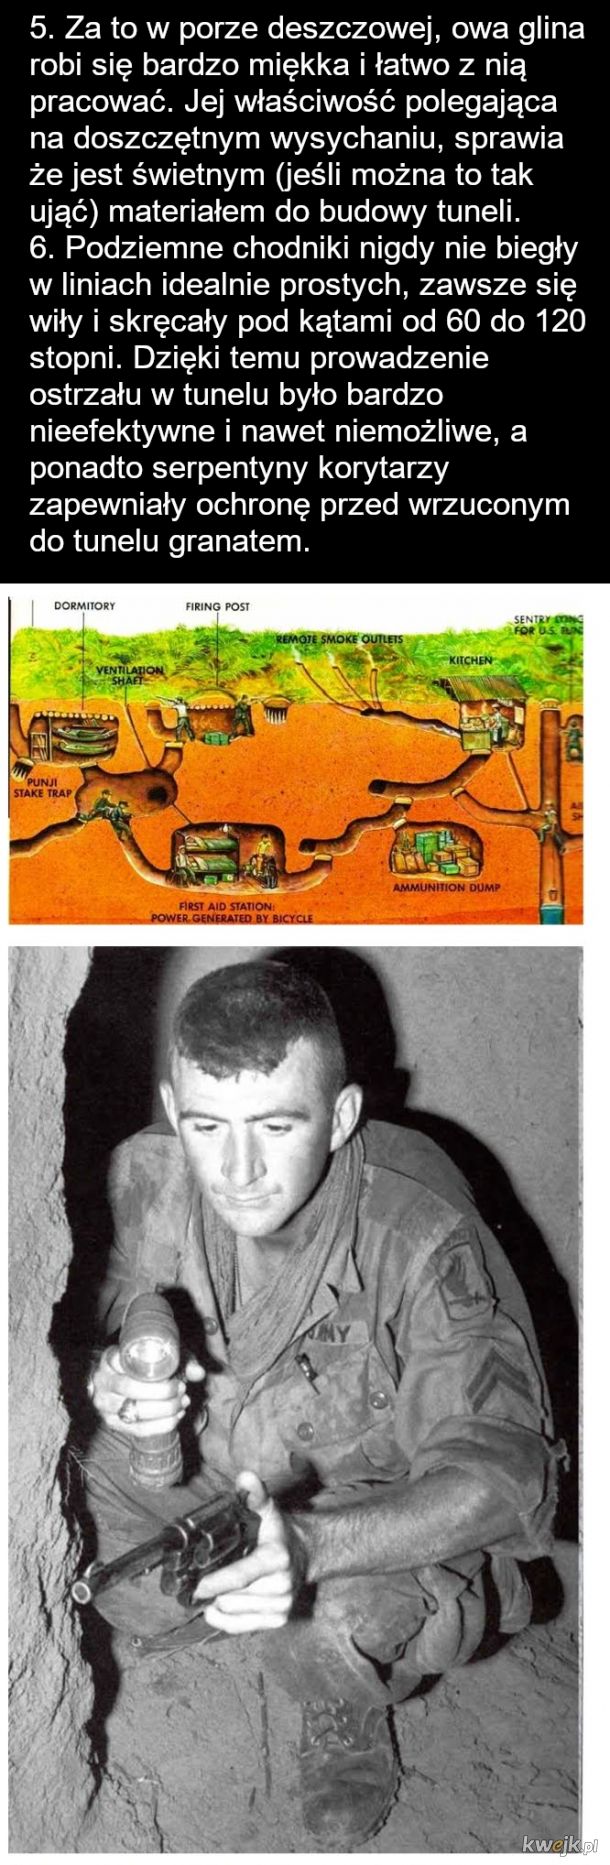 Amerykańscy żołnierze w Wietnamie - Szczury tunelowe